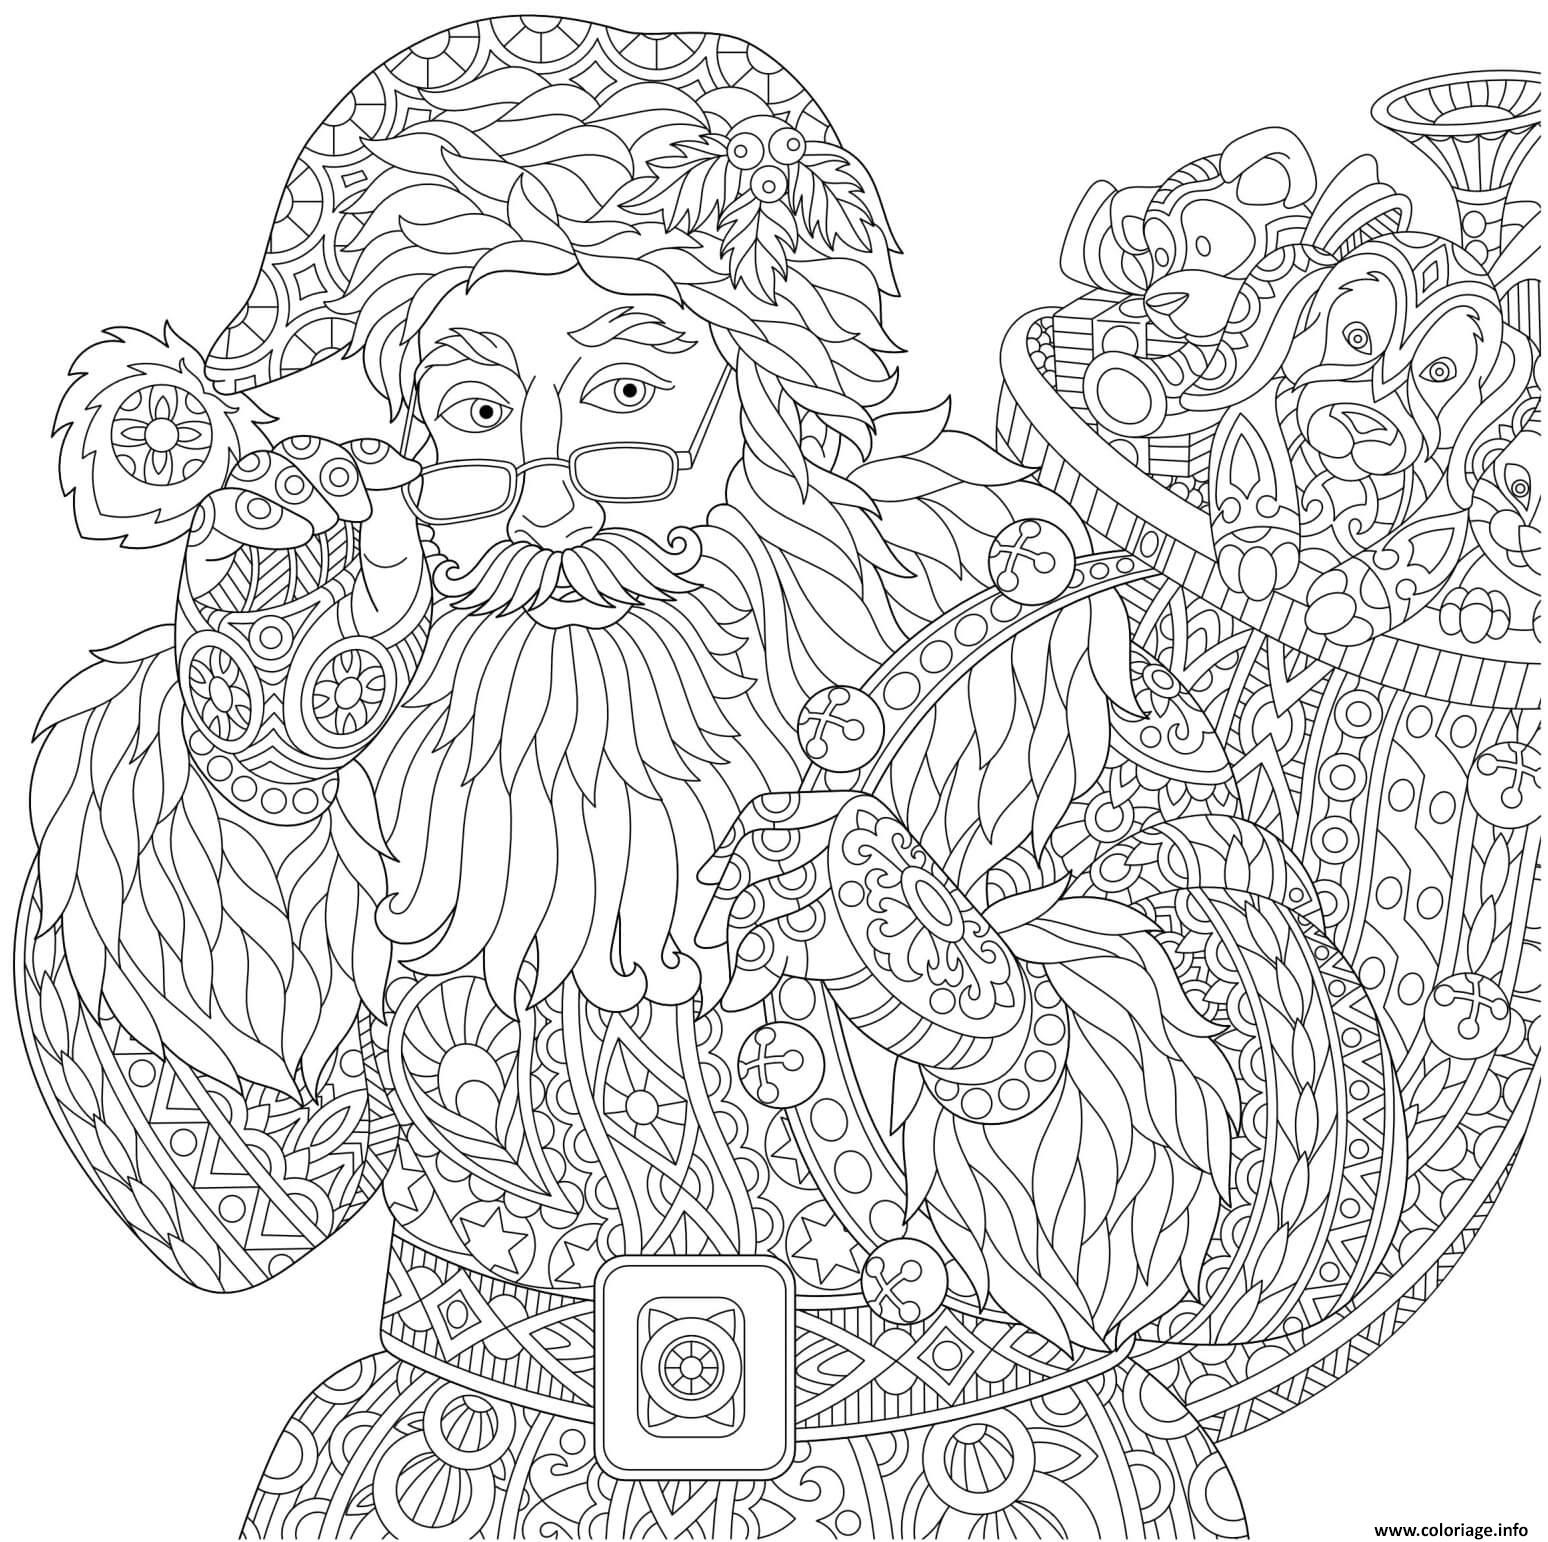 Coloriage Pere Noel Avec Son Sac A Cadeaux Mandala Anti Stress dedans Coloriage De Pere Noel 